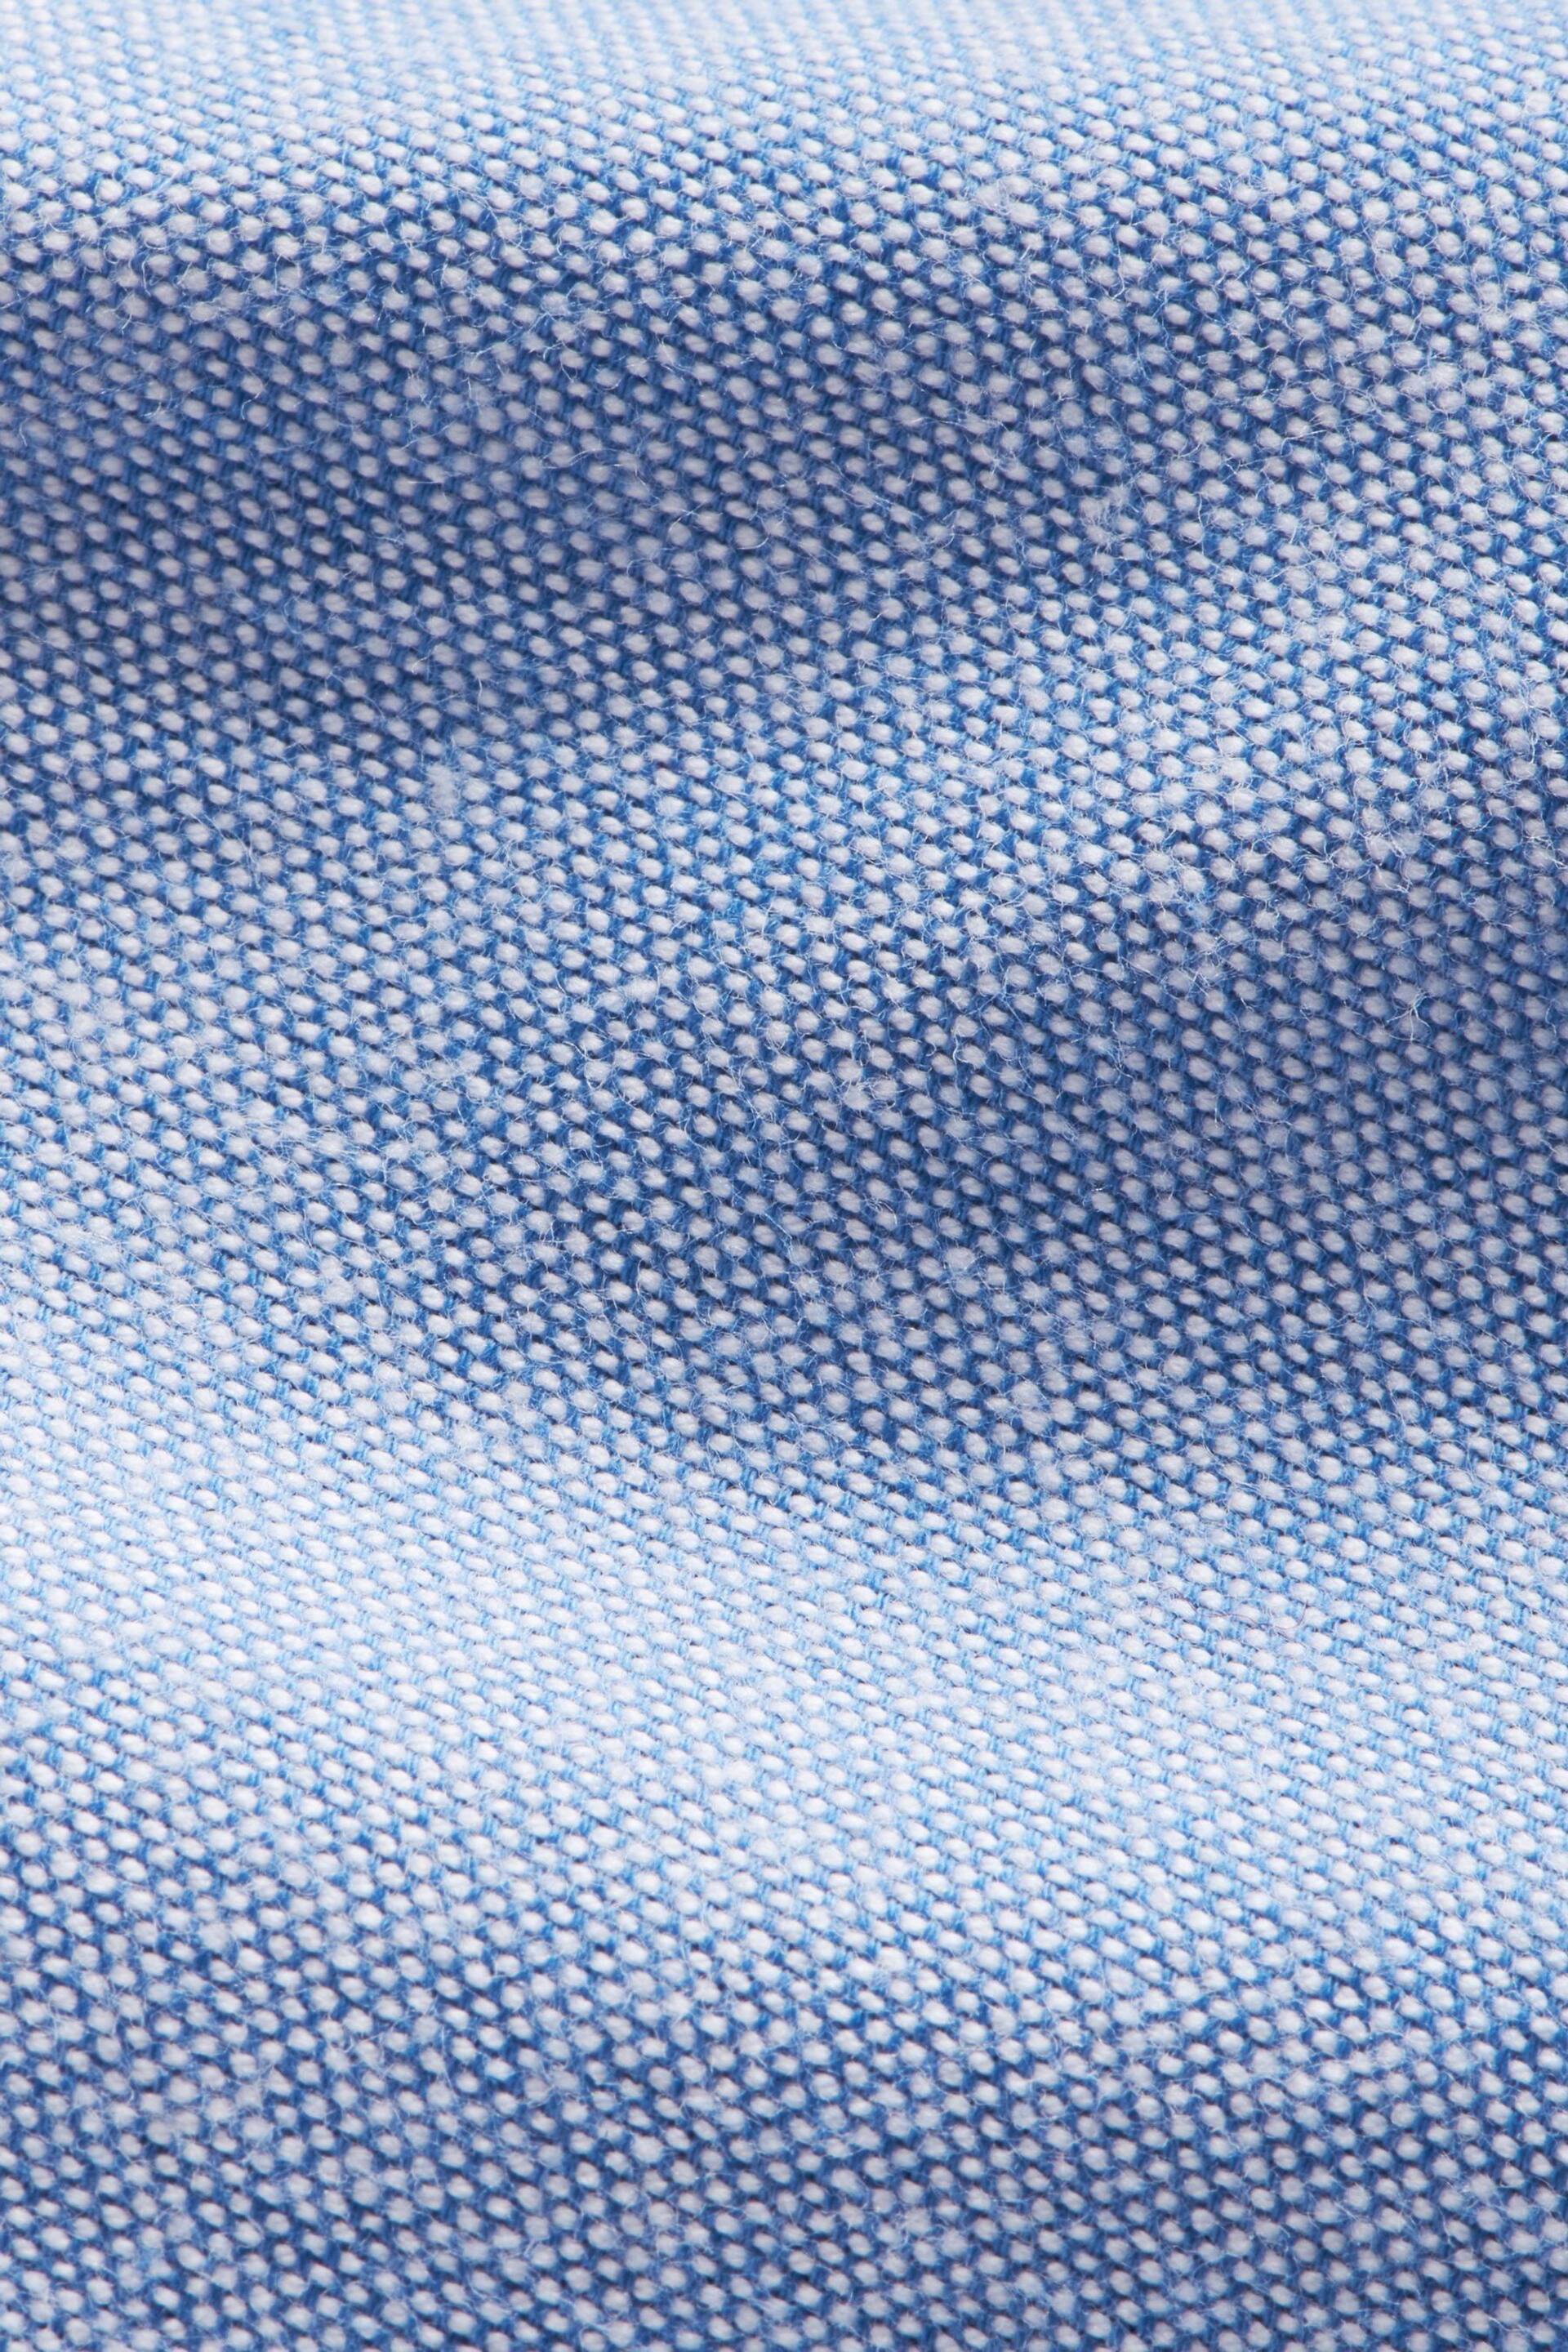 Peckham Rye Oxford Long Sleeve Shirt - Image 6 of 6